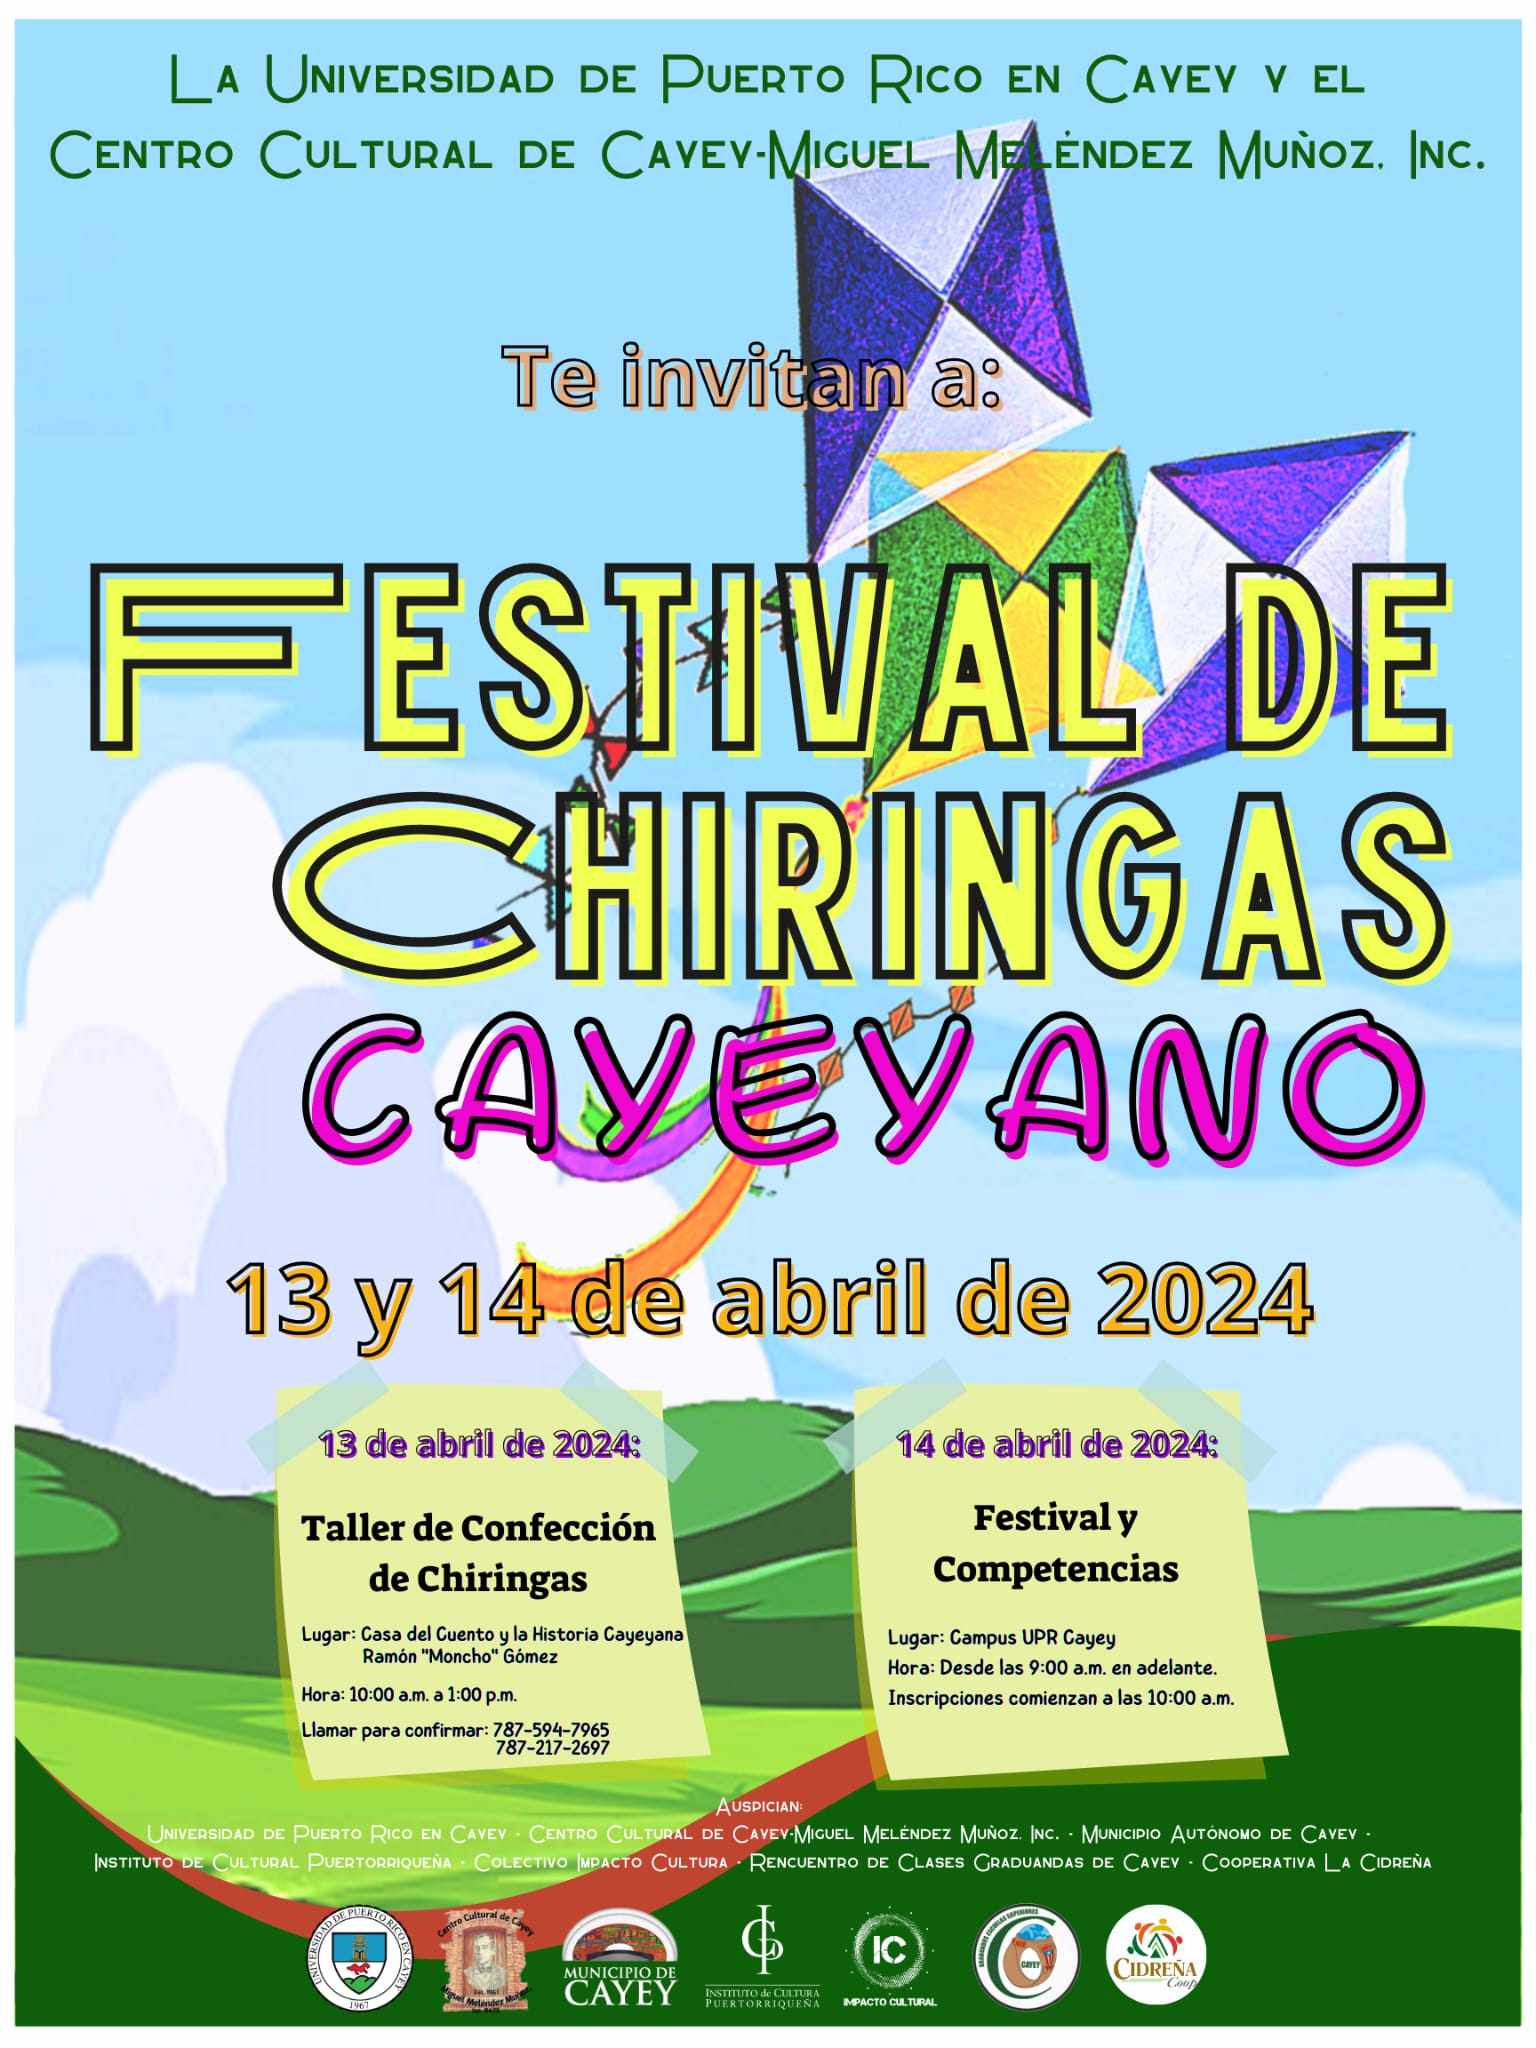 Festival de Chiringas